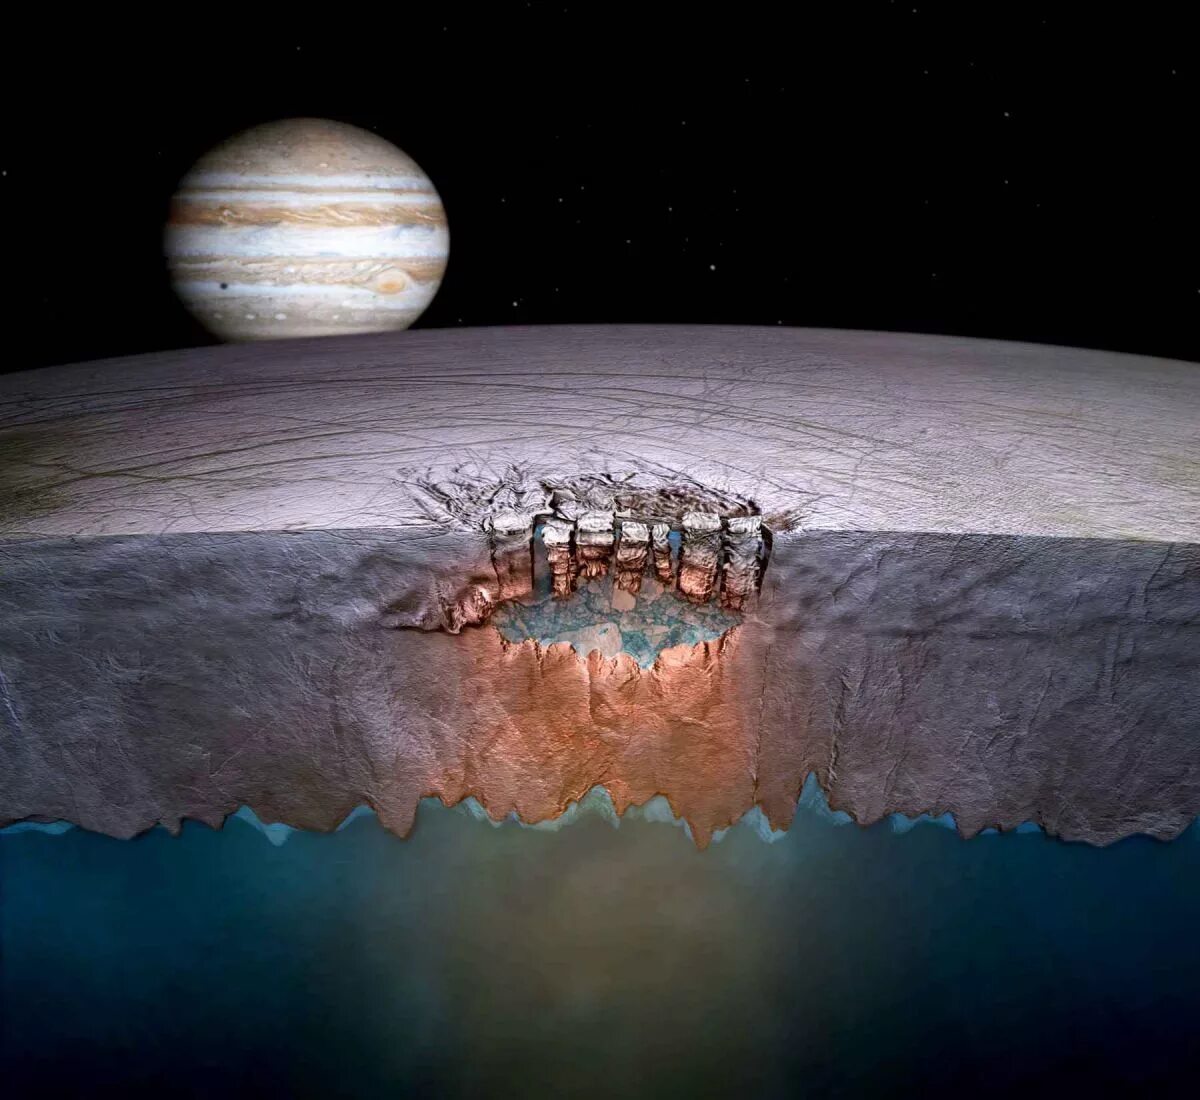 Самый большой океан в солнечной системе. Европа Спутник Юпитера океан. Поверхность Европы спутника Юпитера. Европа ледяной Спутник Юпитера. Жизнь на Европе спутнике Юпитера.